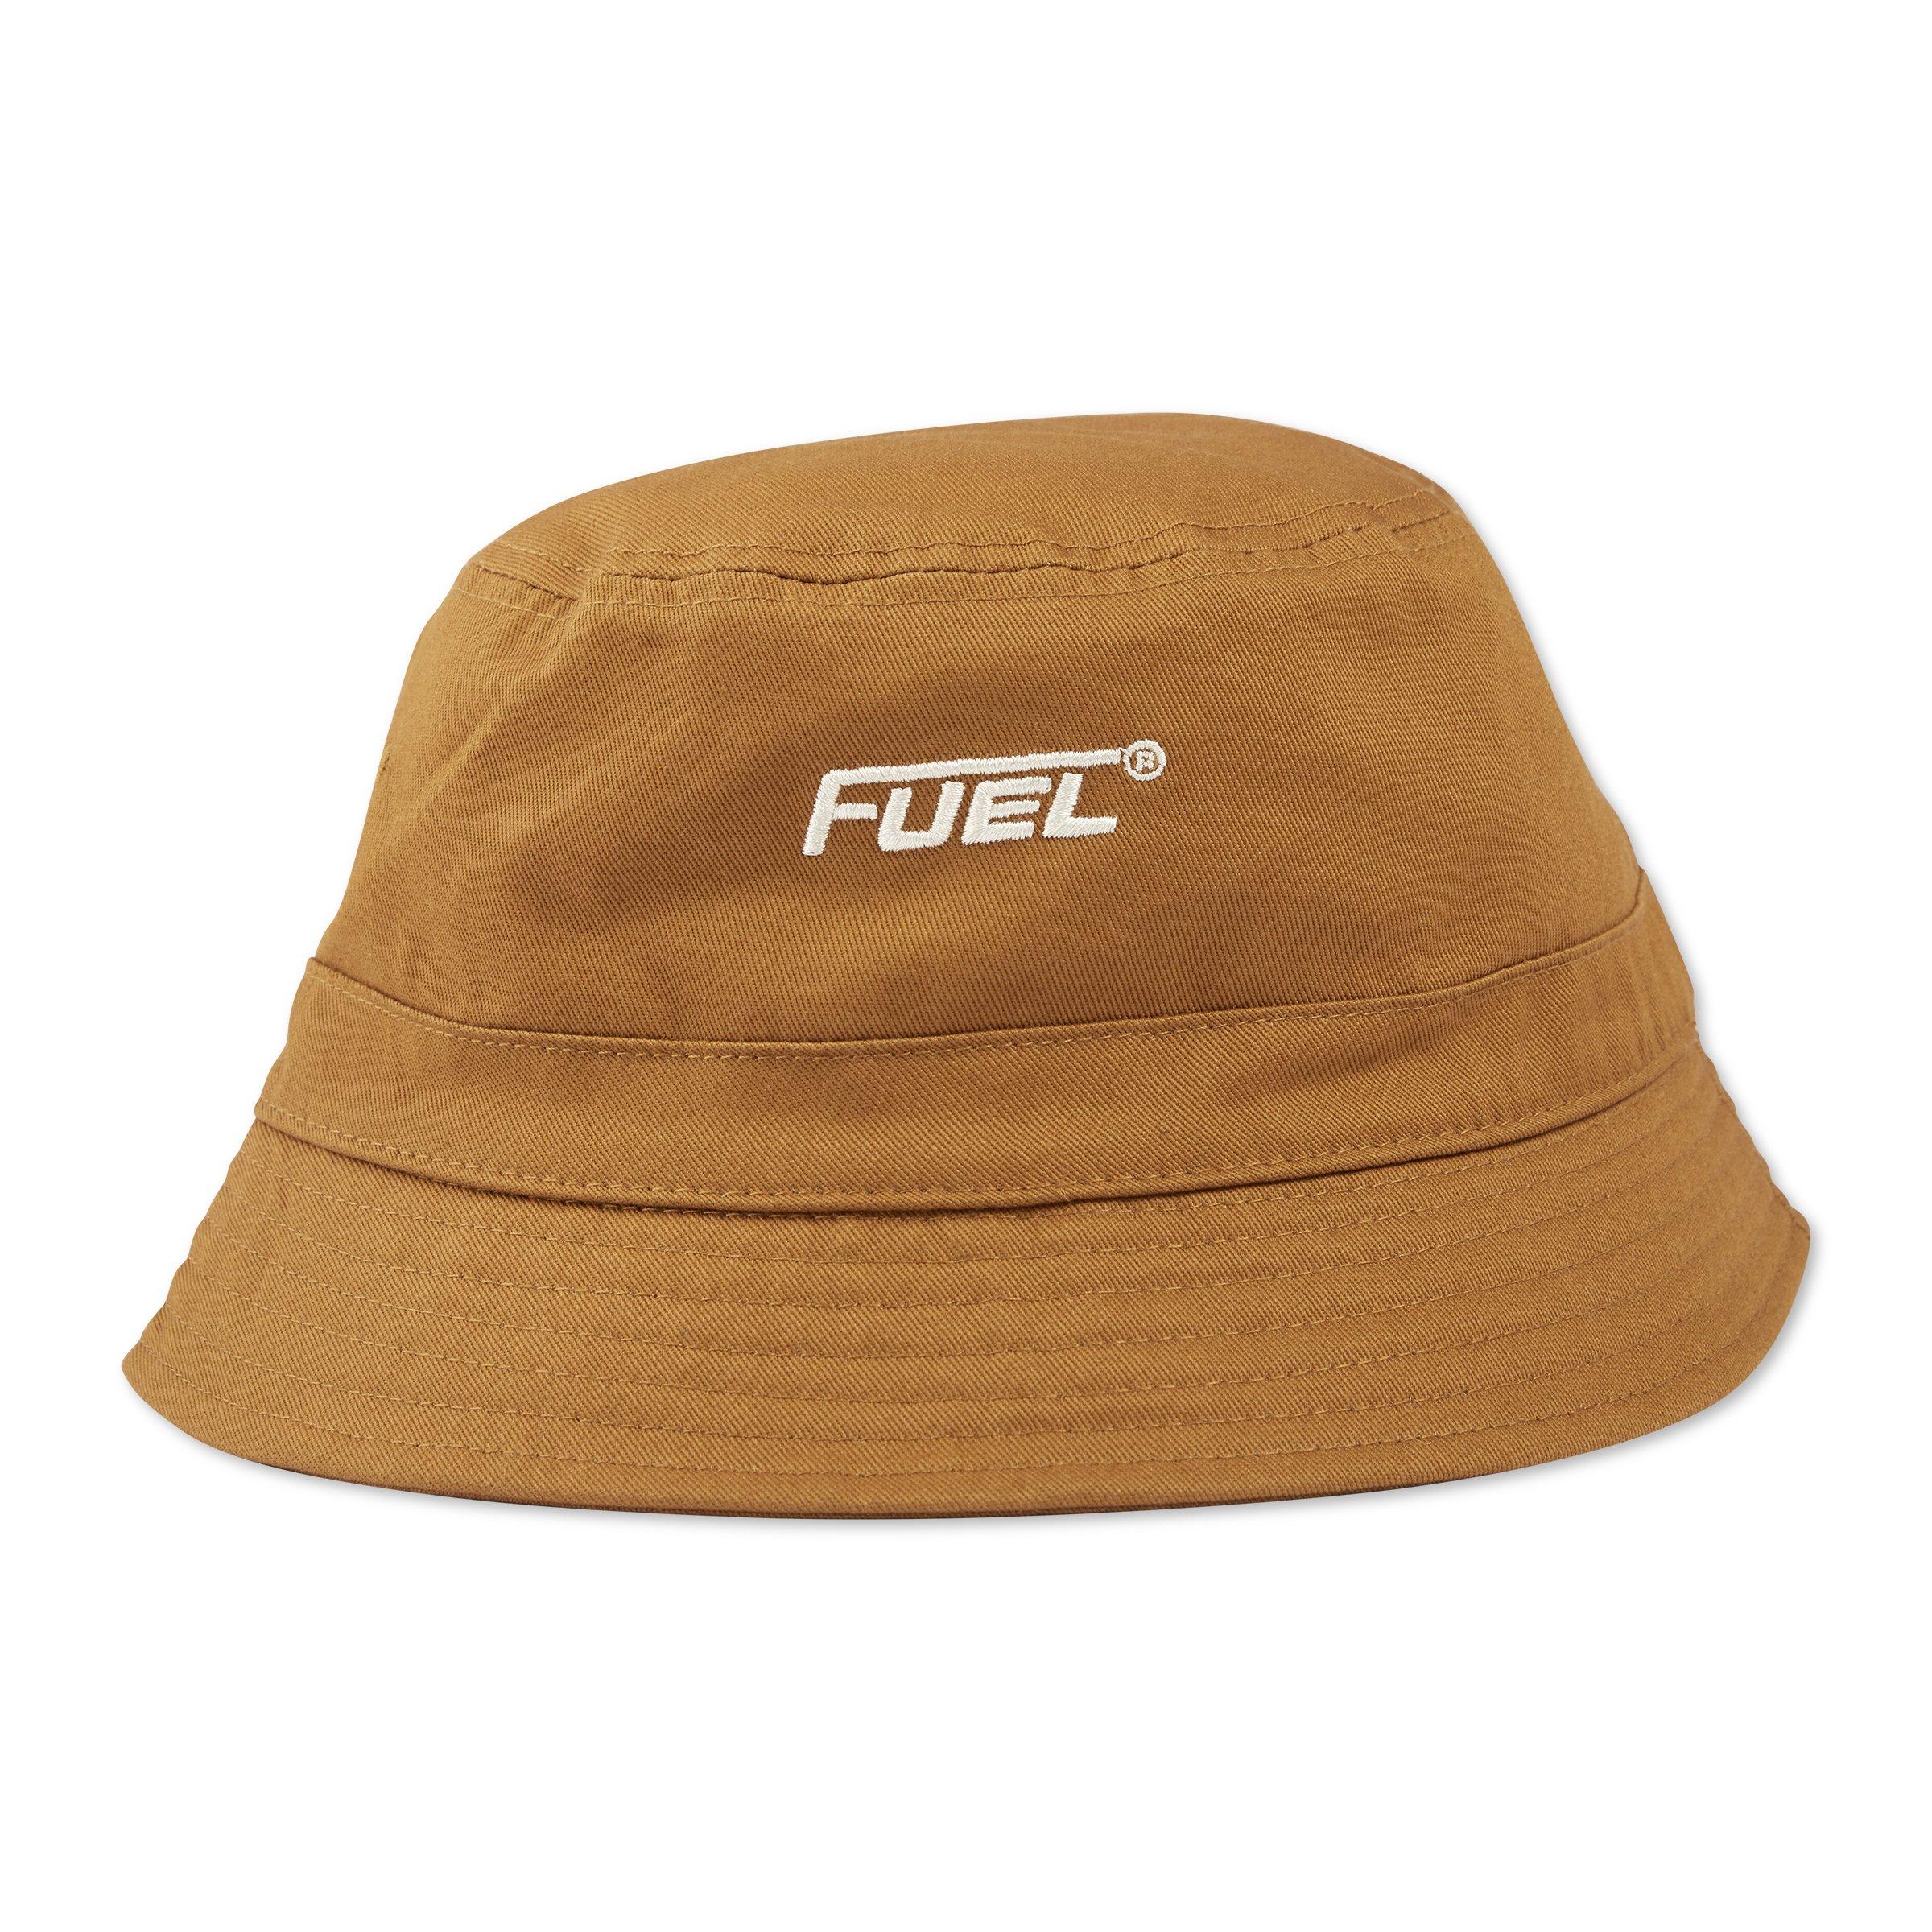 Buy Fuel Mustard Floppy Hat Online | Truworths